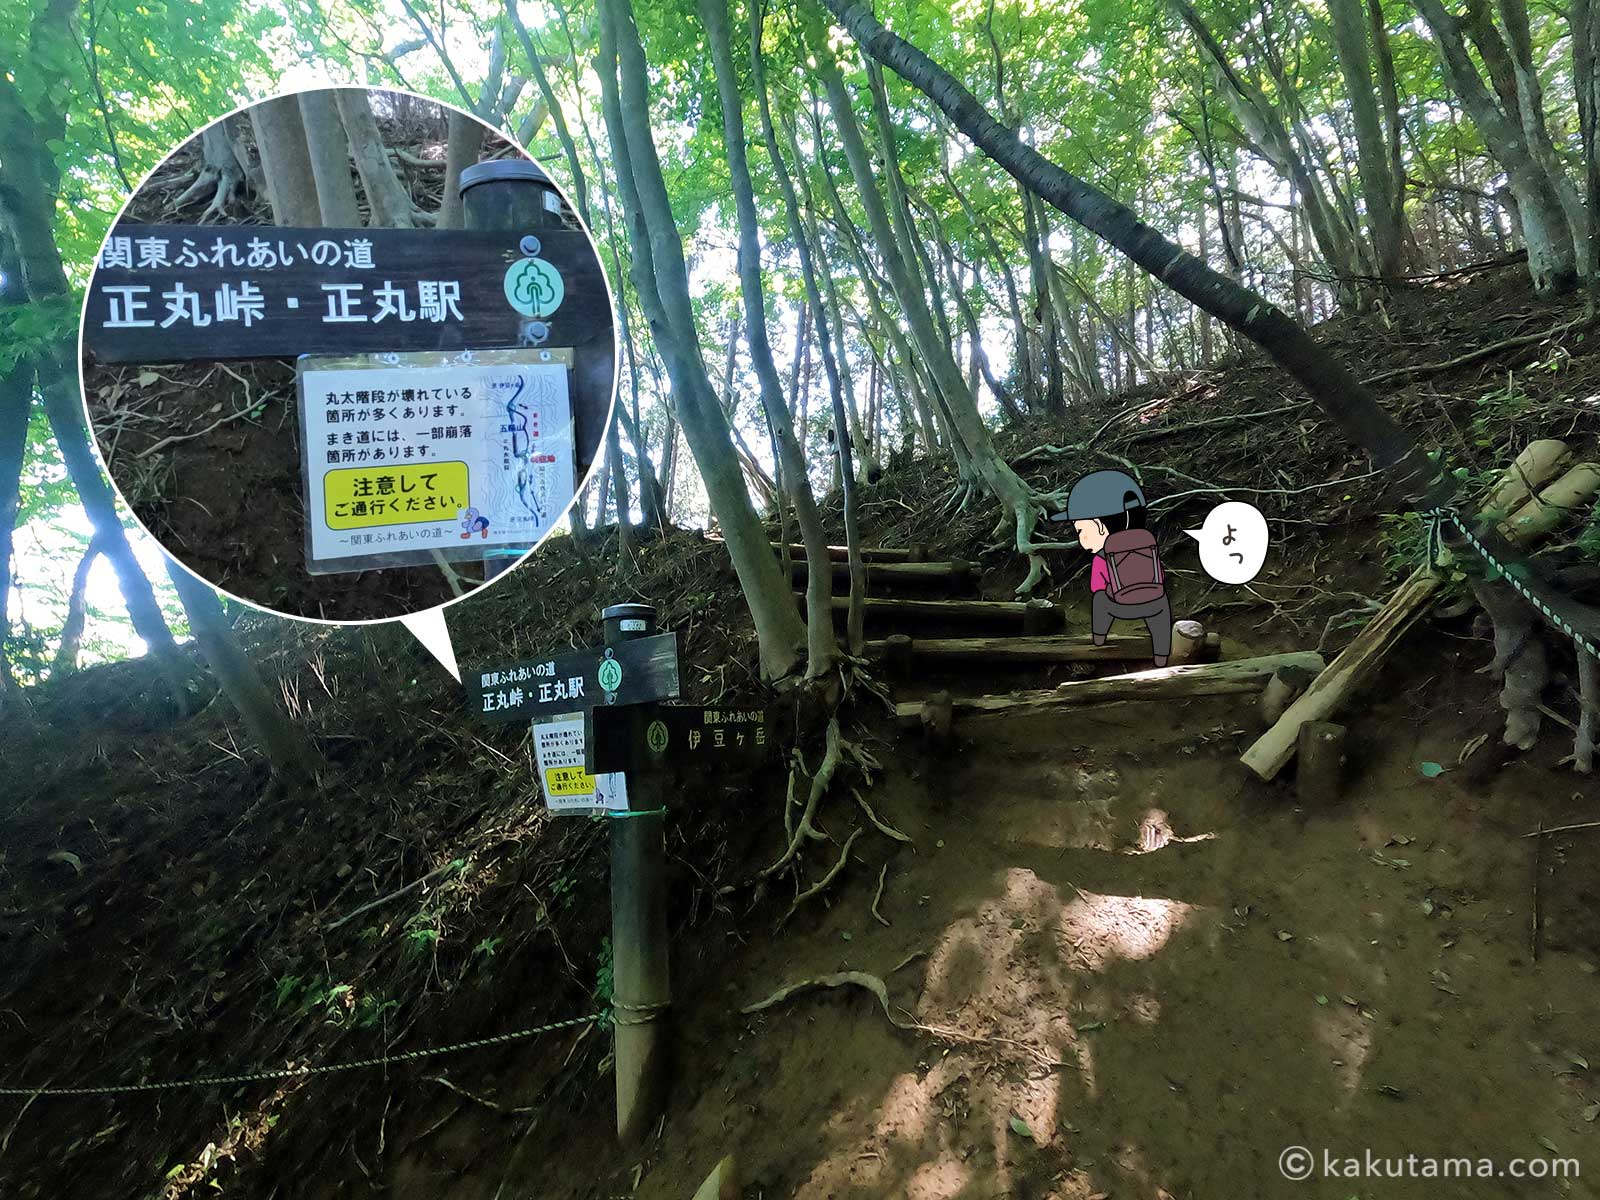 伊豆ヶ岳山頂付近に設置された道標の写真とイラスト